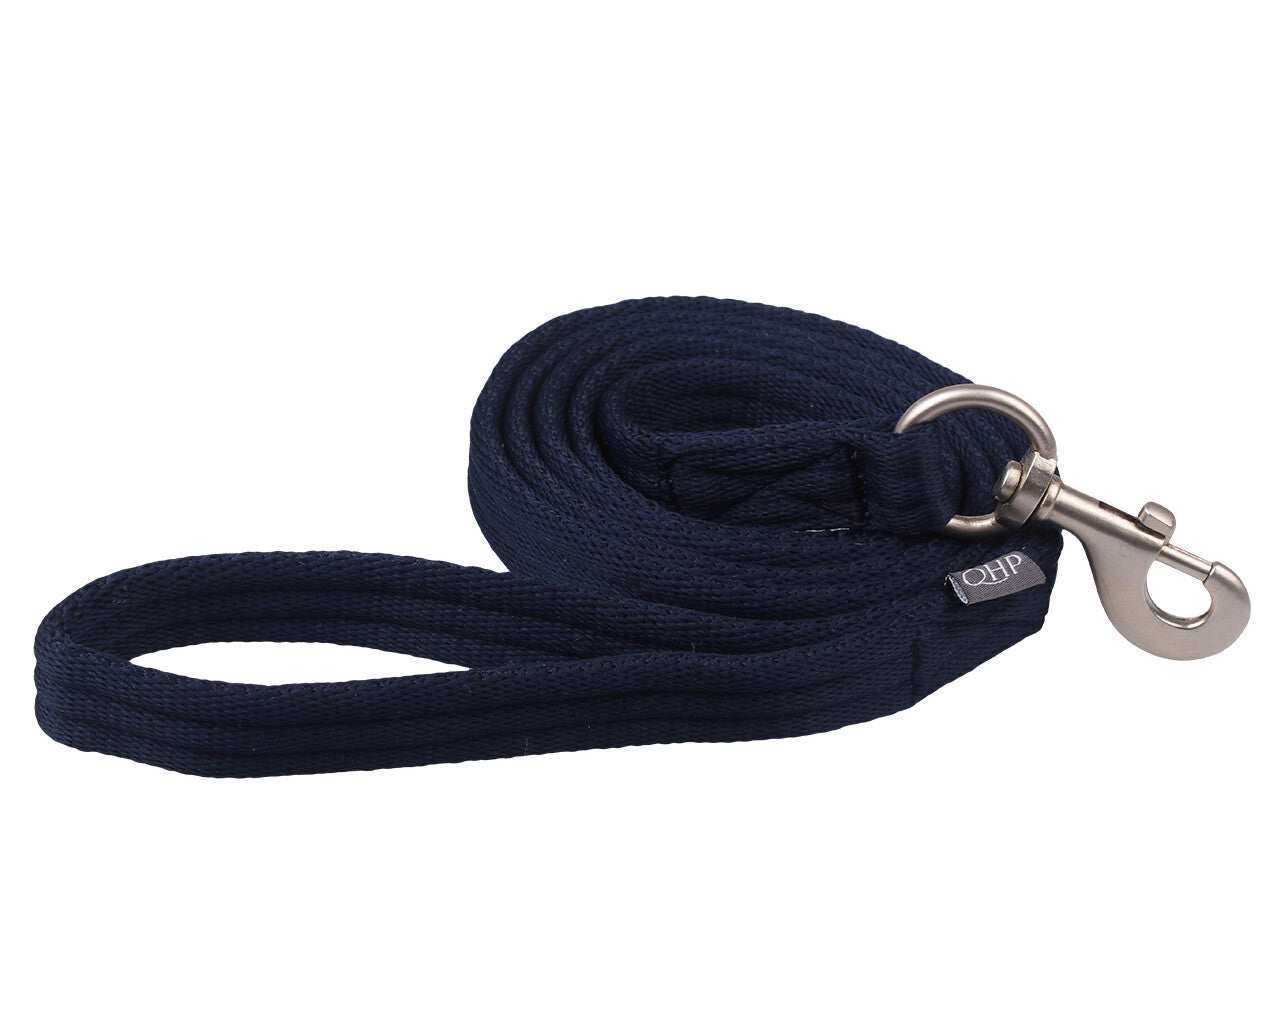 Cuerda cabestro azul marino QHP